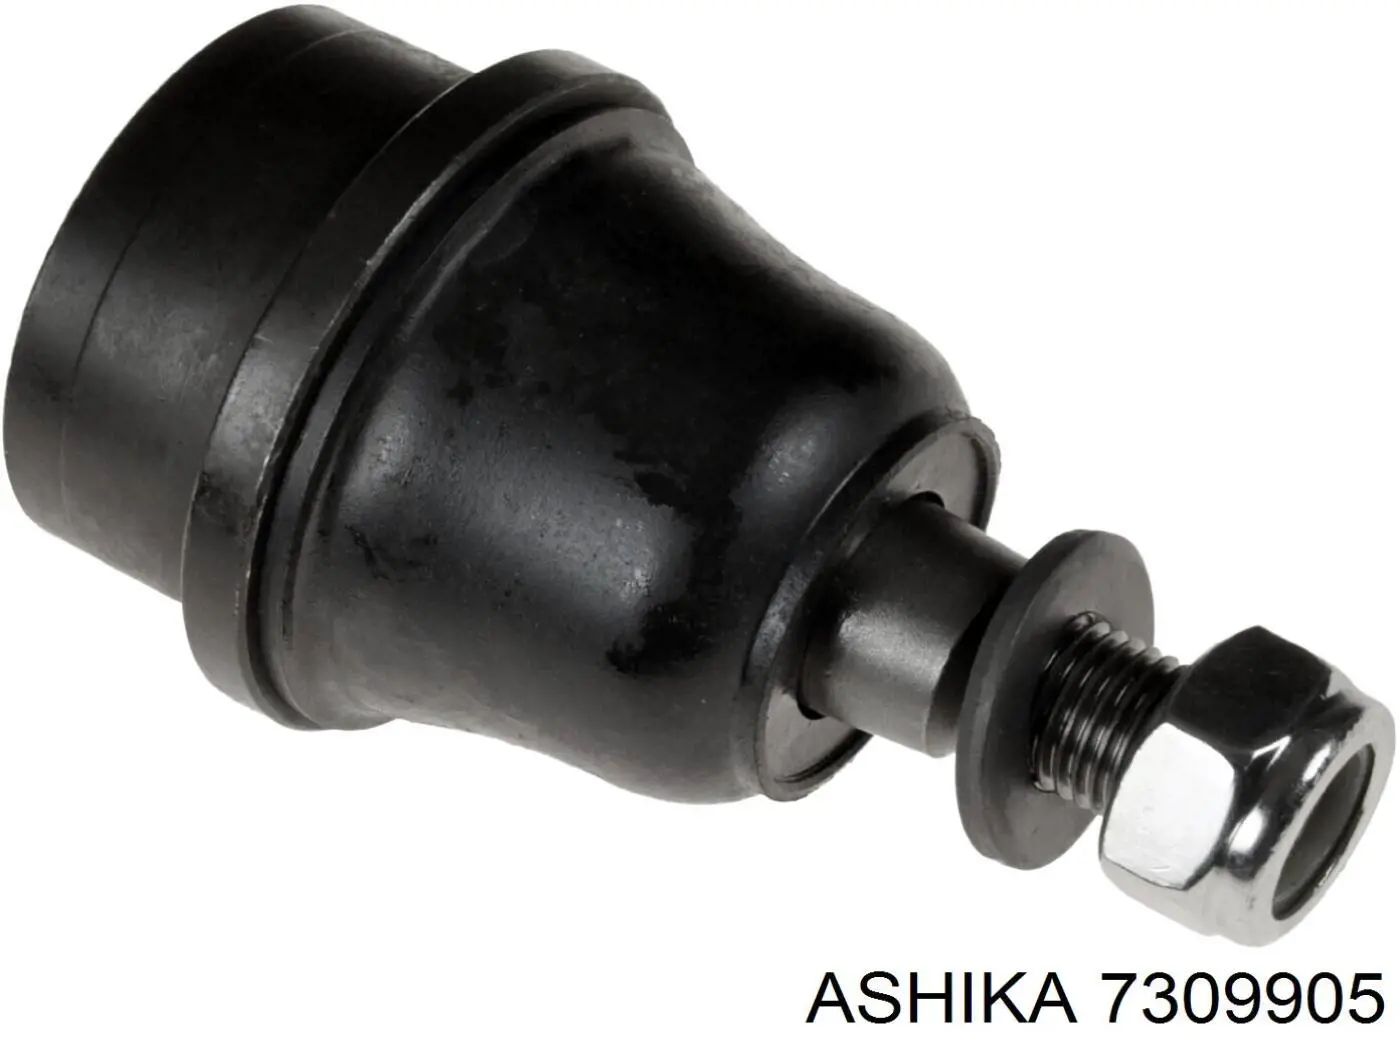 7309905 Ashika rótula de suspensión inferior